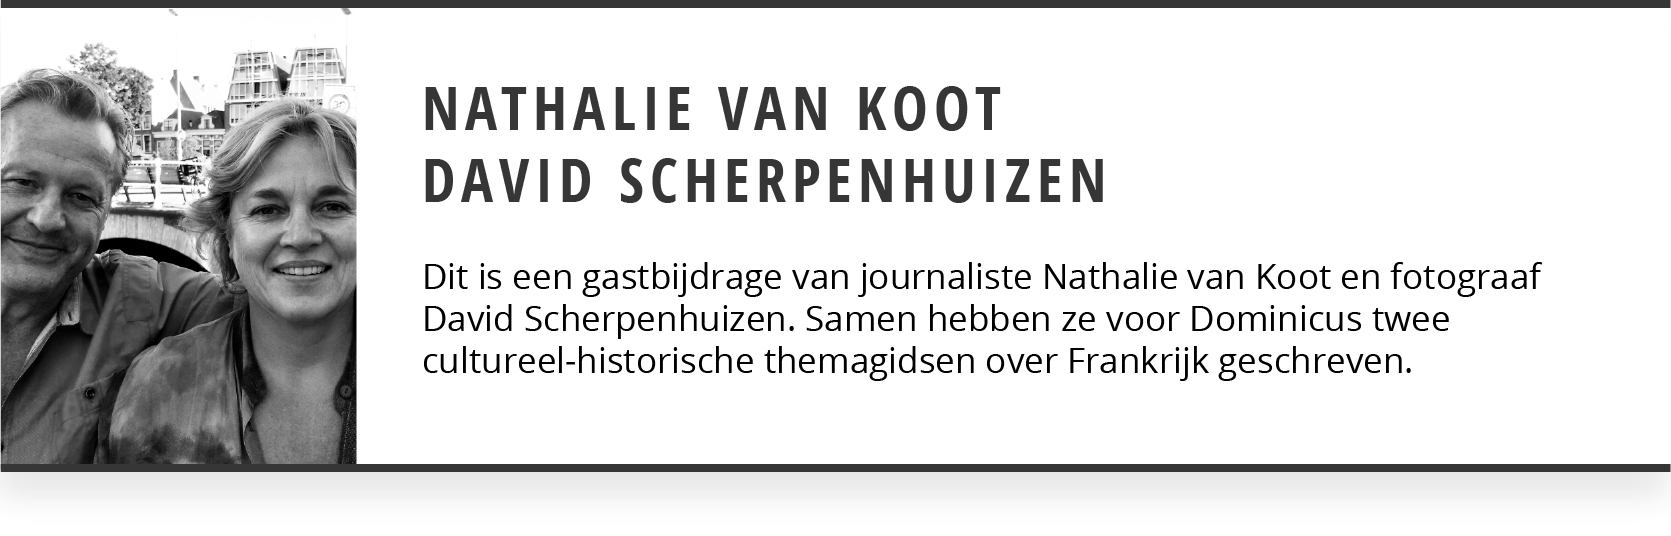 Nathalie Van Koot David Scherpenhuizen